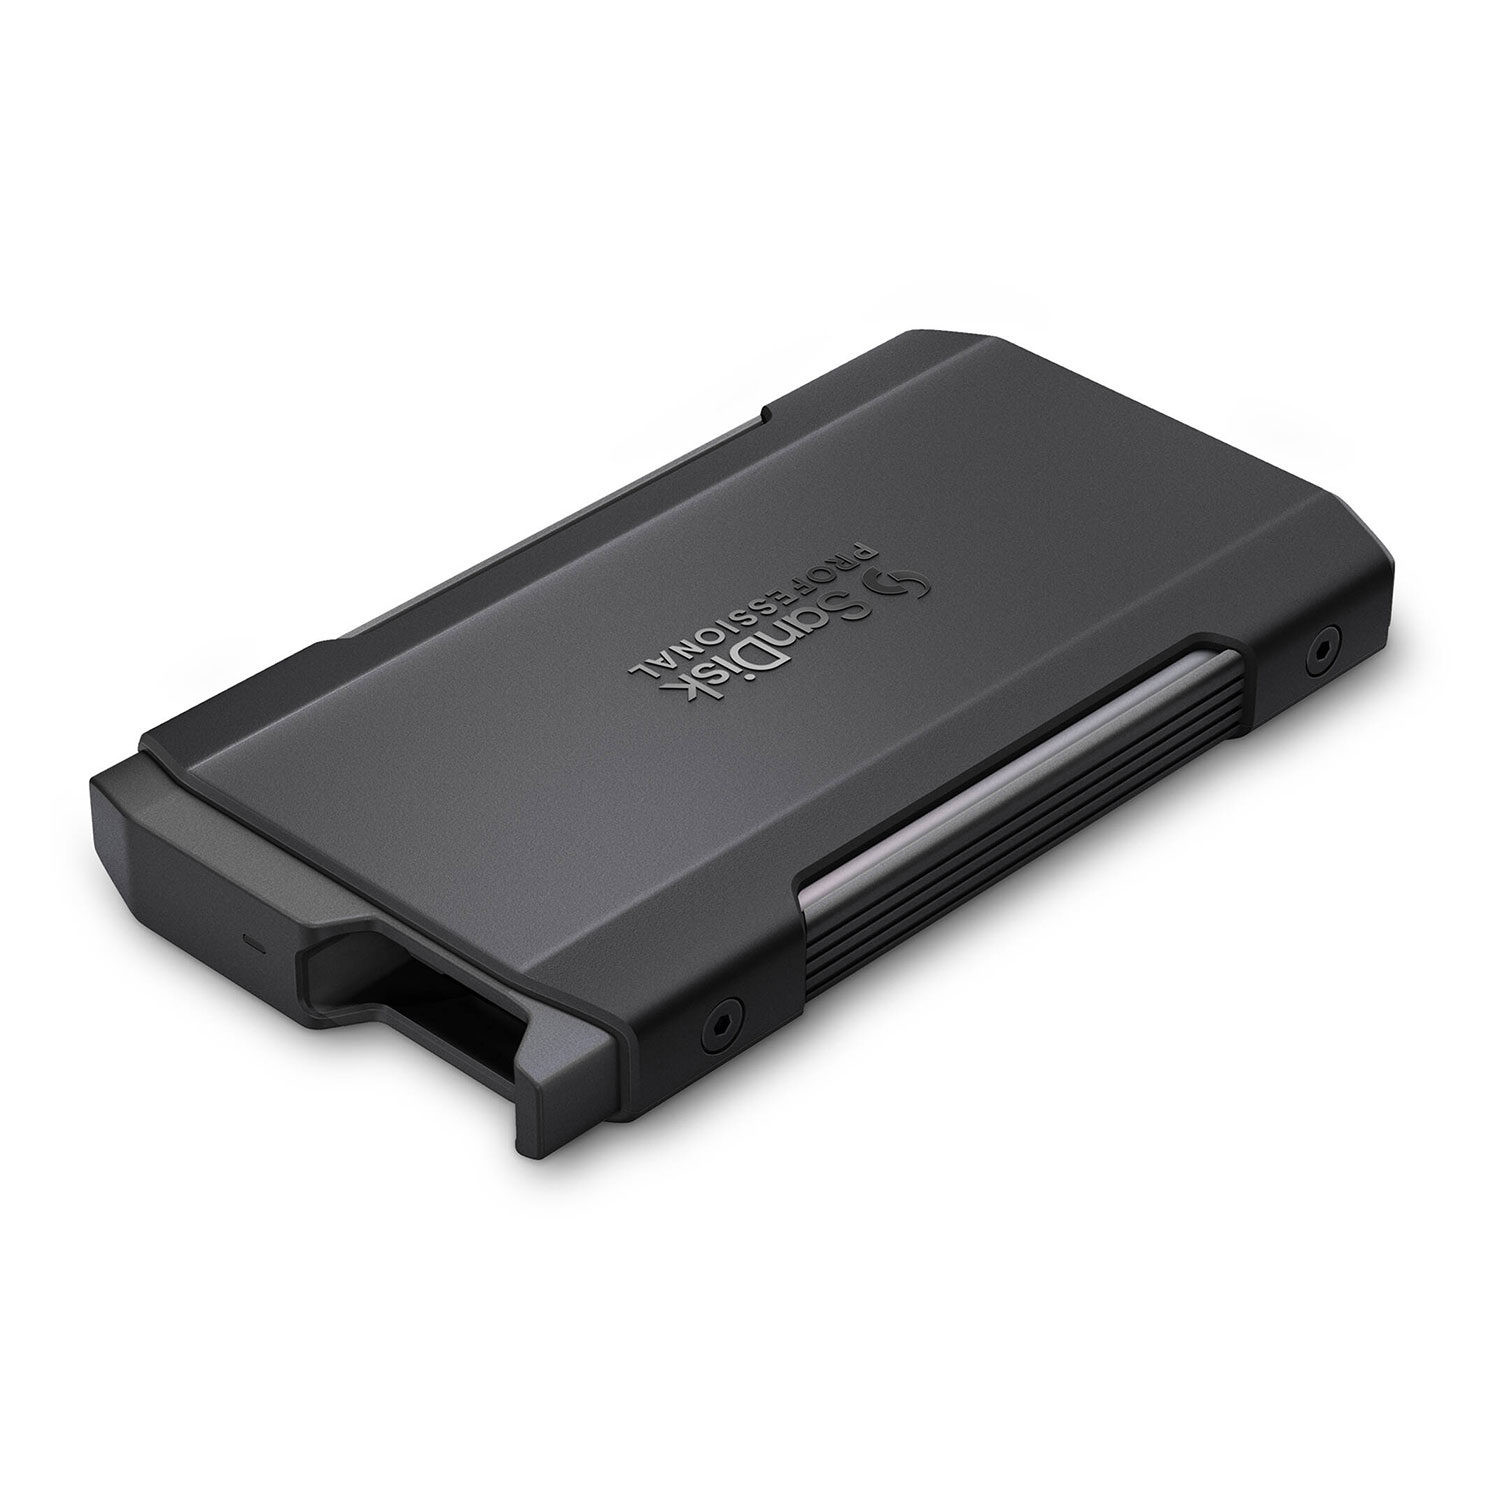 SanDisk Professional 1TB Pro-Blade Transport mobile SSD